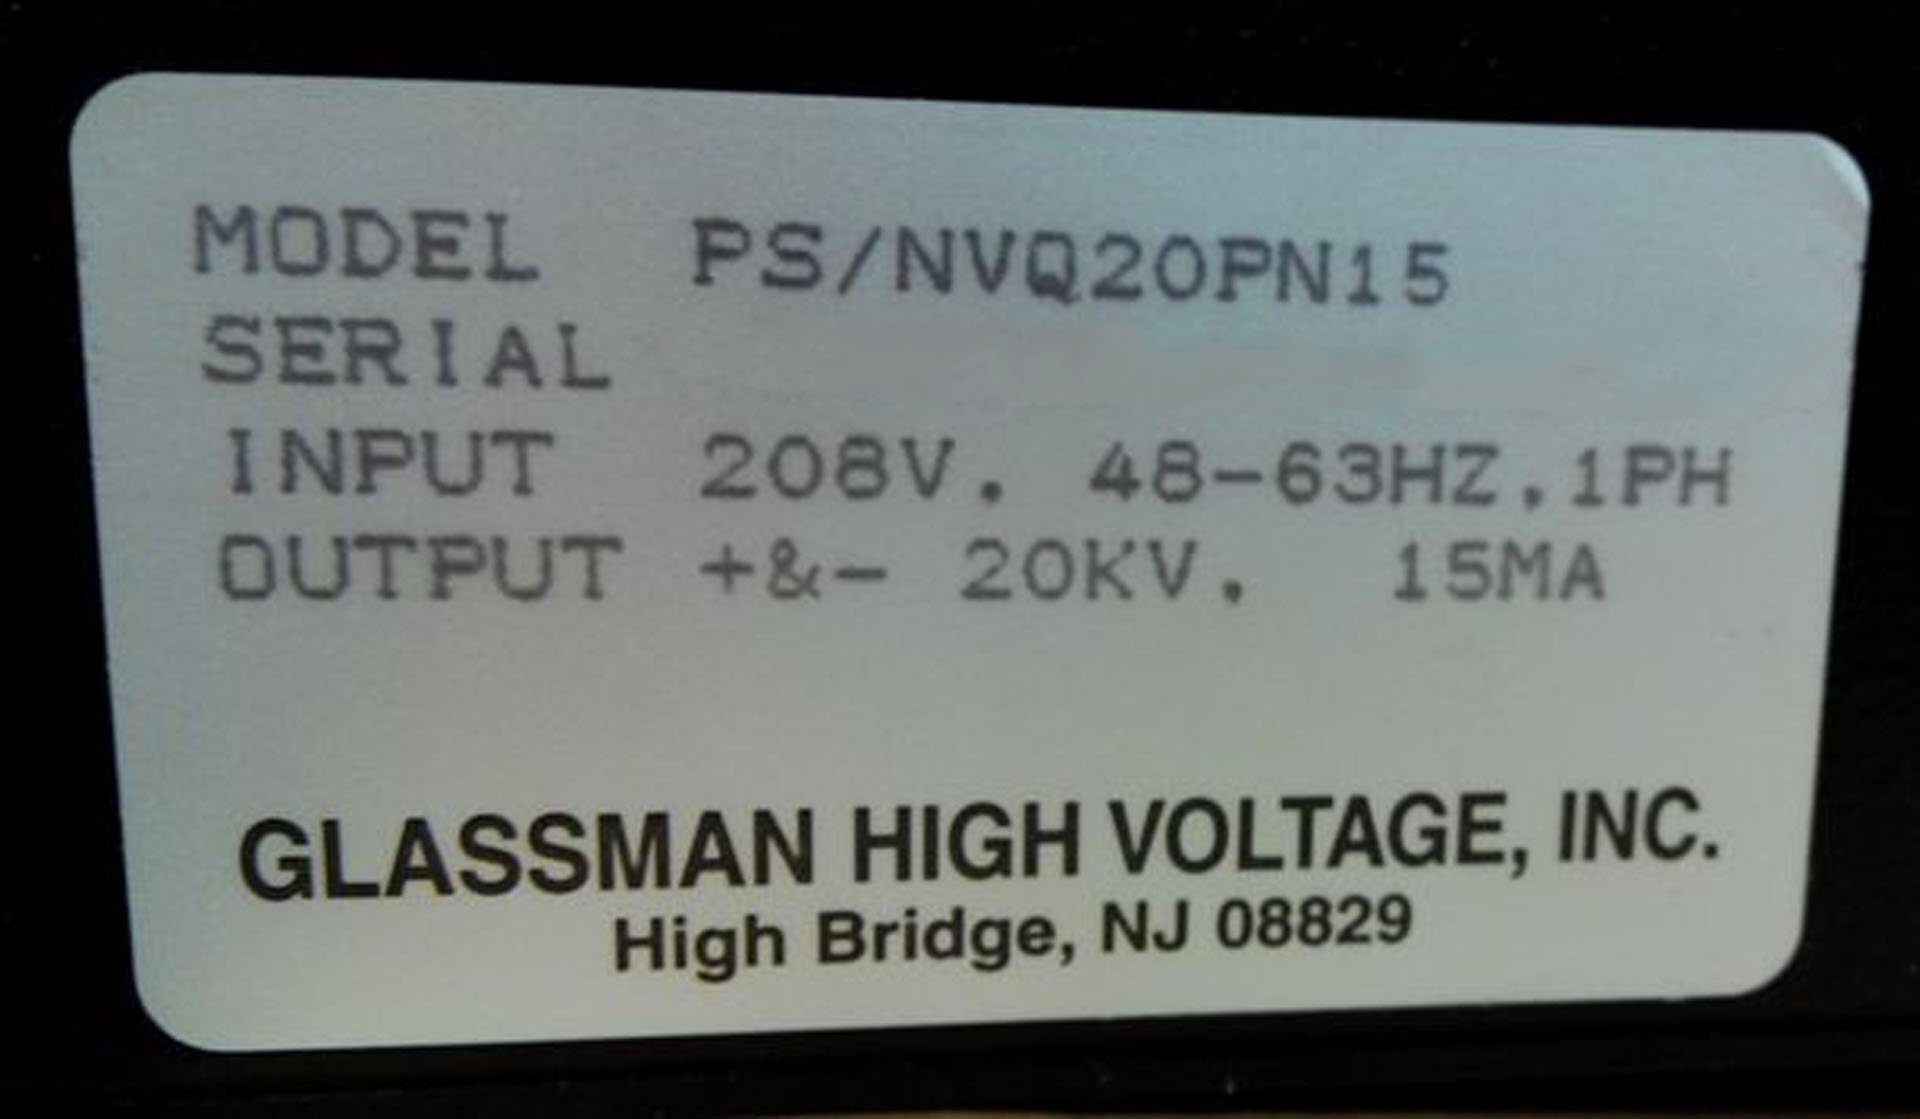 圖為 已使用的 GLASSMAN HIGH VOLTAGE INC PS / NVQ20PN15 待售